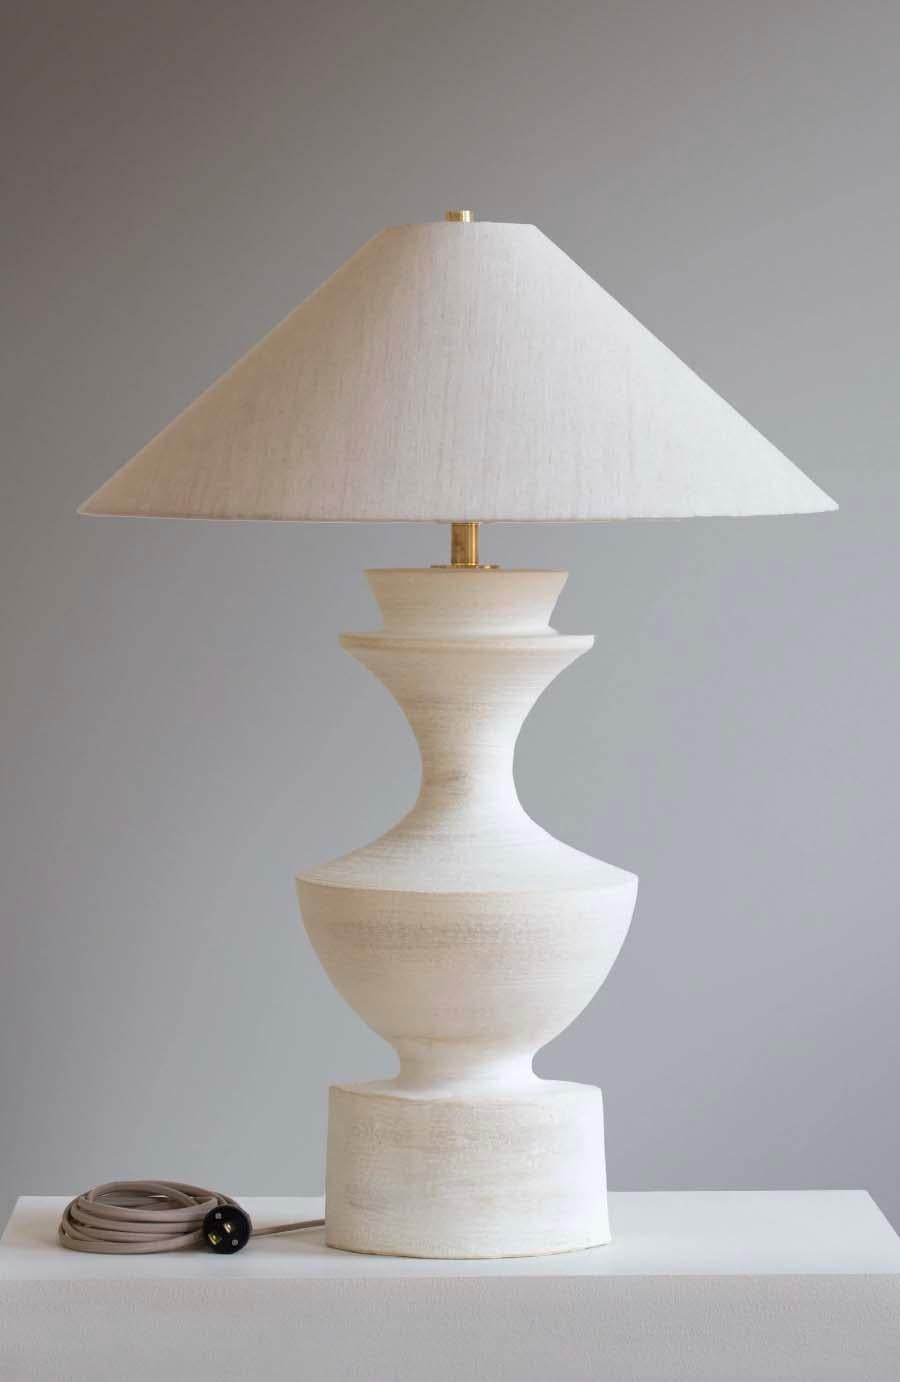 Die Leuchte Sophia ist eine handgefertigte Studiotöpferei des Keramikkünstlers Danny Kaplan. Inklusive Lampenschirm. Bitte beachten Sie, dass die genauen Abmessungen variieren können.

Geboren in New York City und aufgewachsen in Aix-en-Provence,